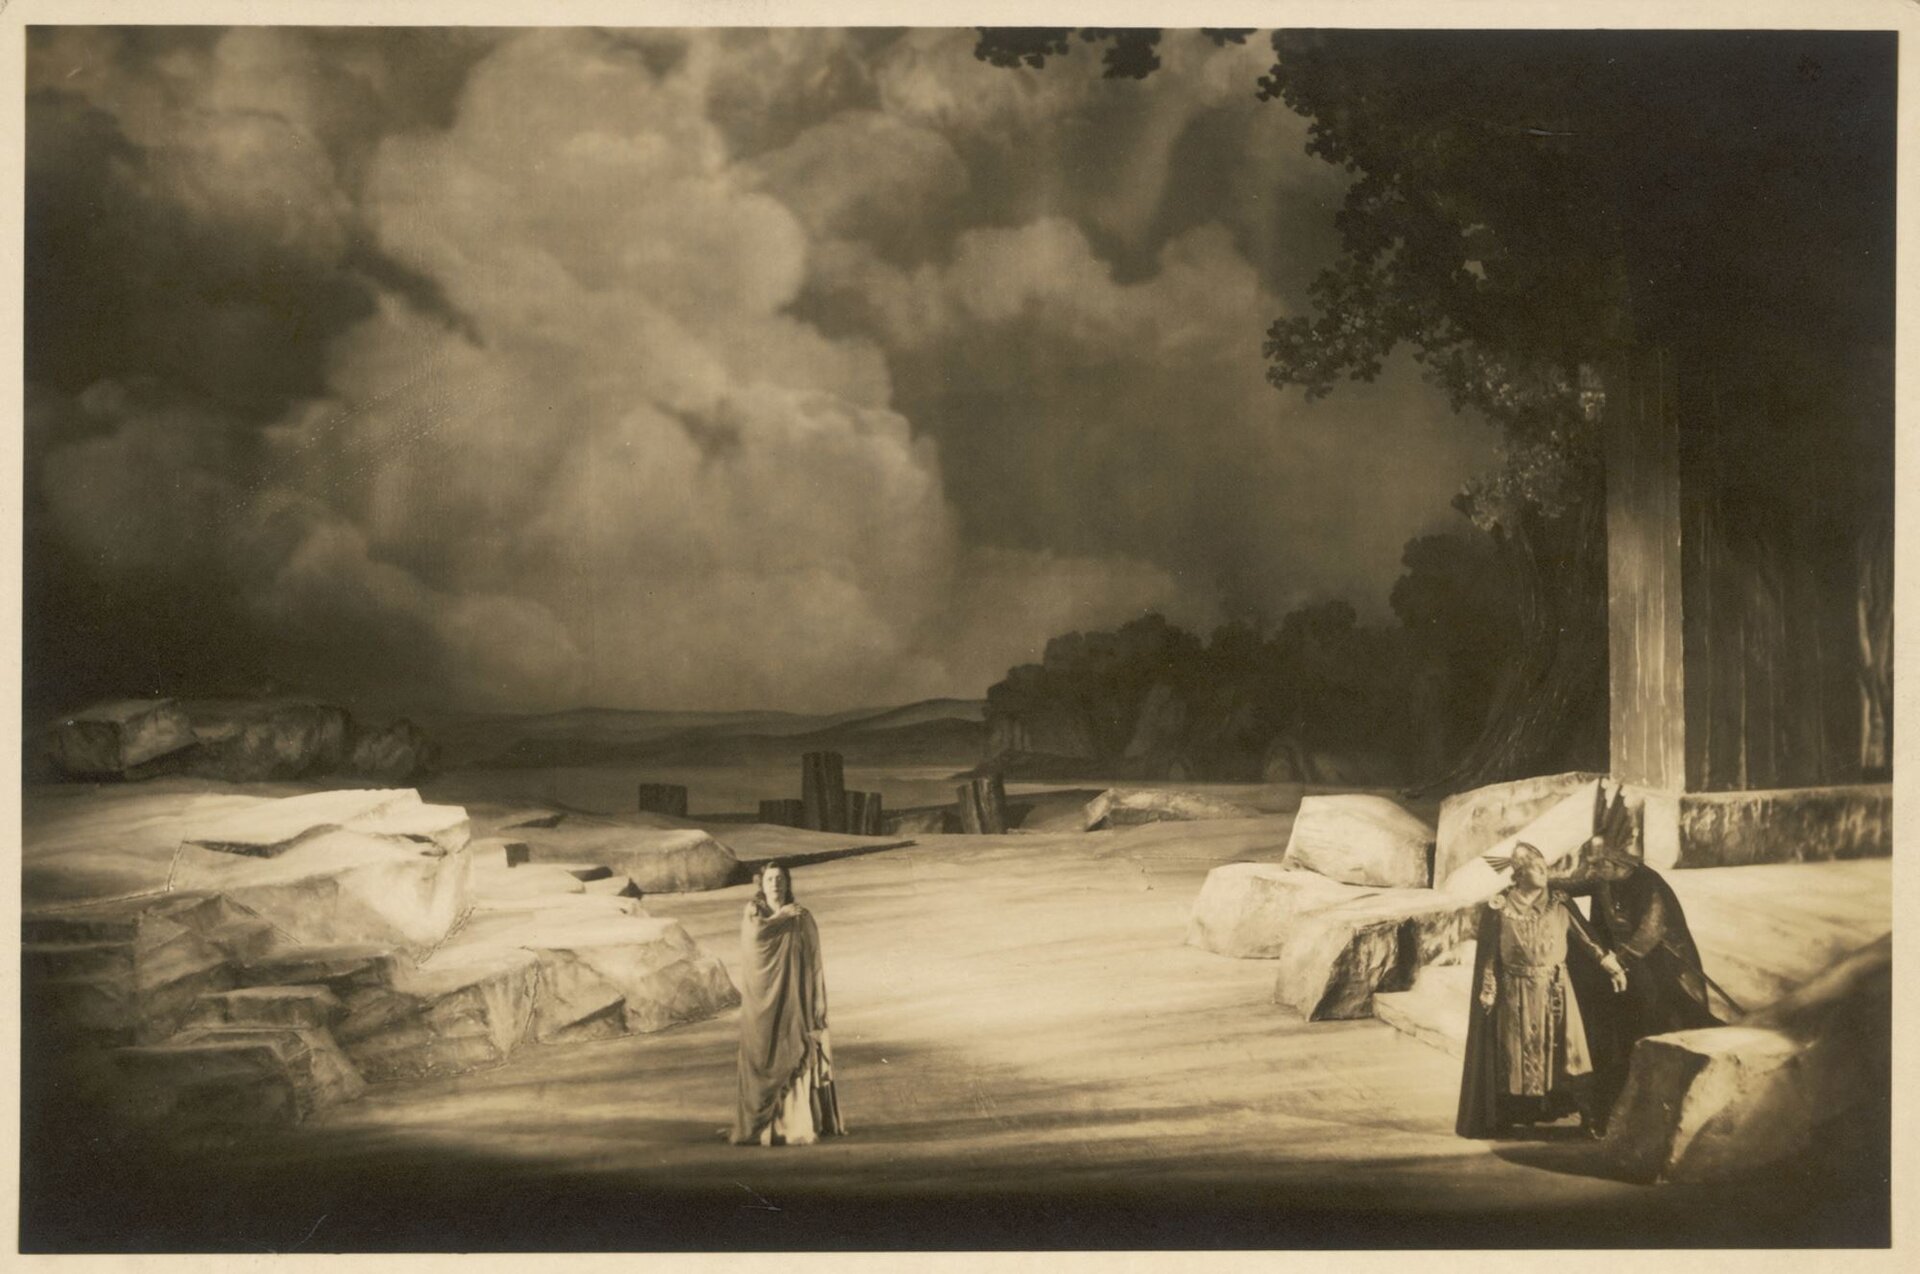 Ilustracja przedstawia realizację dramatu „Zmierzch bogów”, Bayreuth z 1938 r. Na zdjęciu znajduje się dwóch wojowników po prawej stronie, ubrani są w zbroje. W centrum stoi kobieta w jasnych szatach. W oddali widać skały, las i gęste, burzowe chmury.